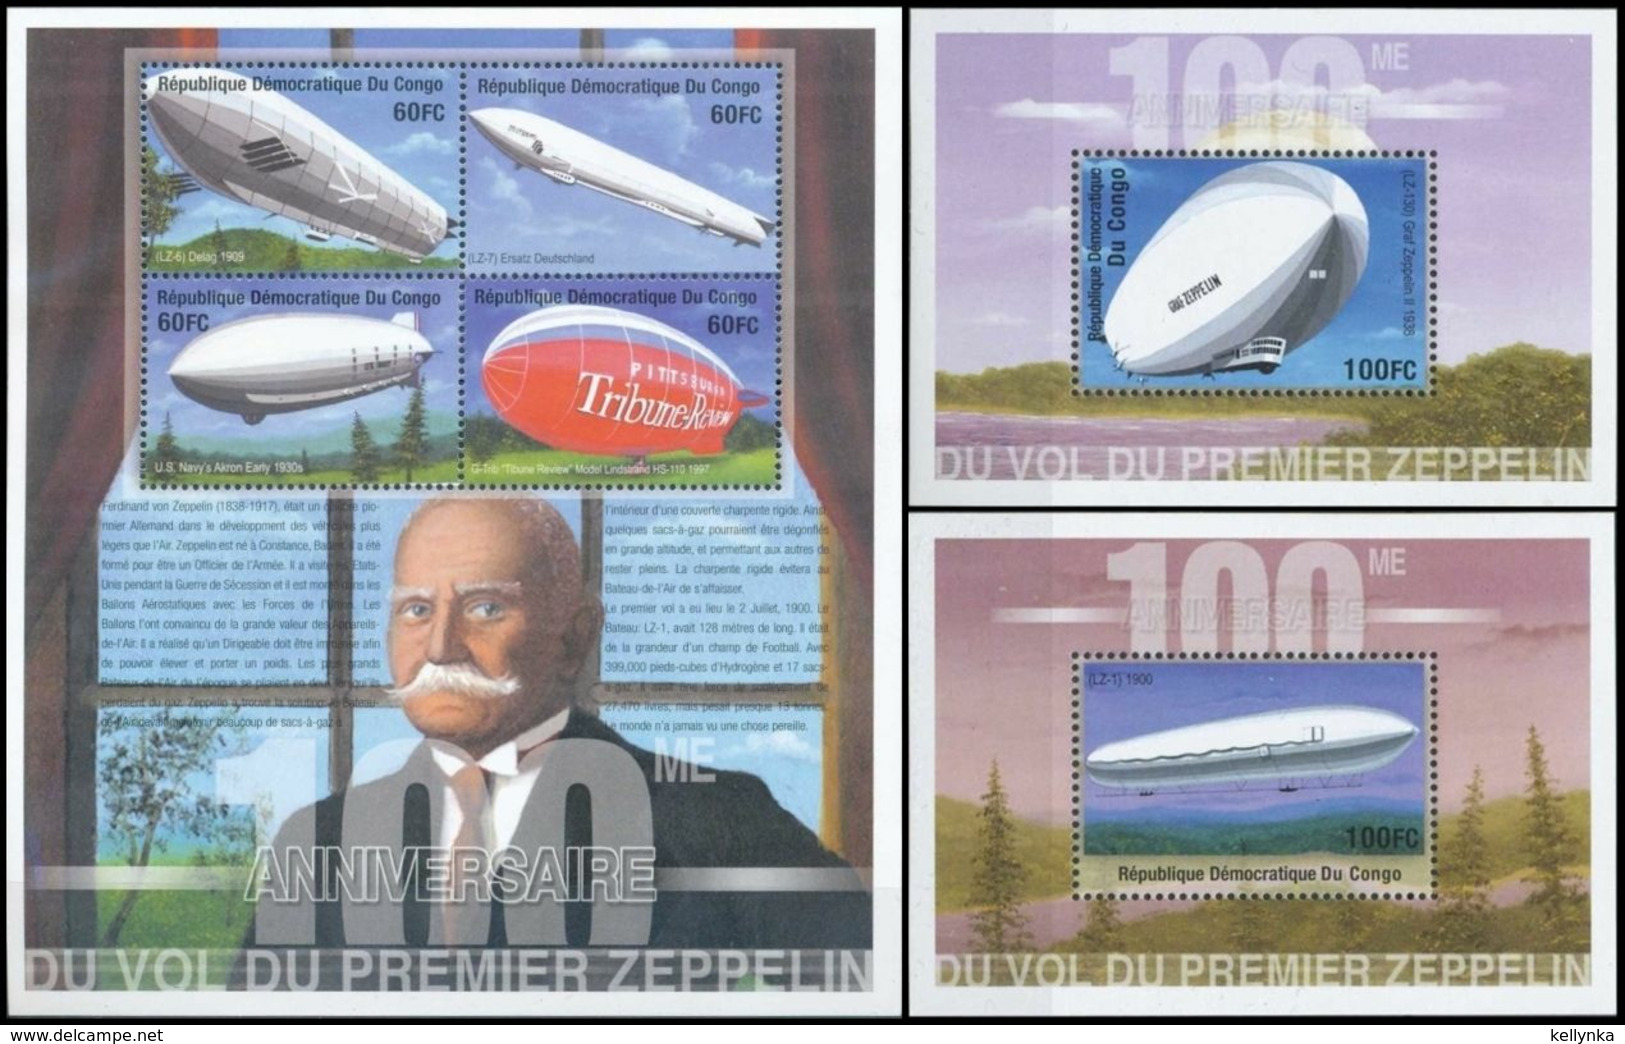 République Démocratique Du Congo - BL192 + BL193/194 - Centenaire Du Zeppelin - 2001 - MNH - Mint/hinged